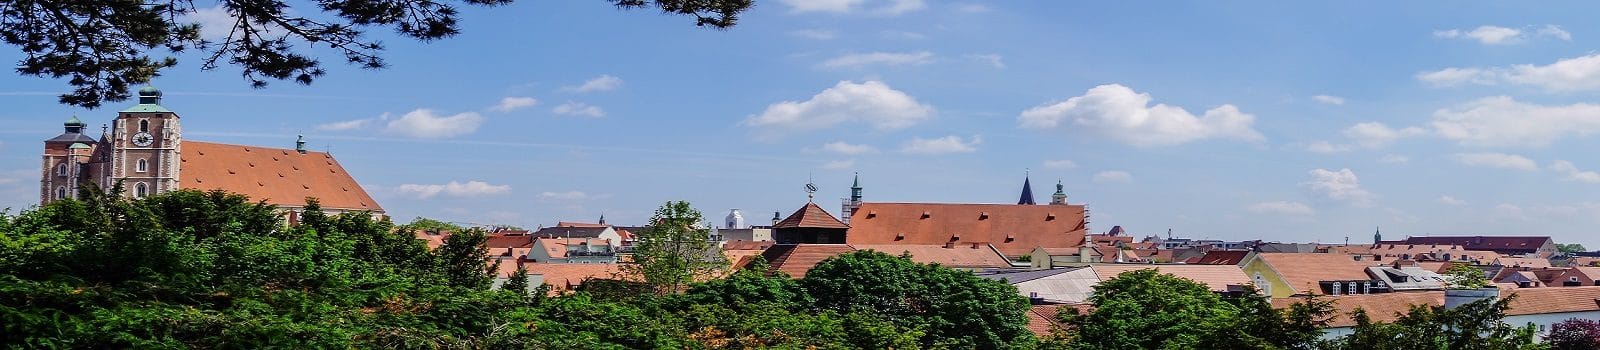 Blick auf die Skyline von Ingolstadt an der Donau